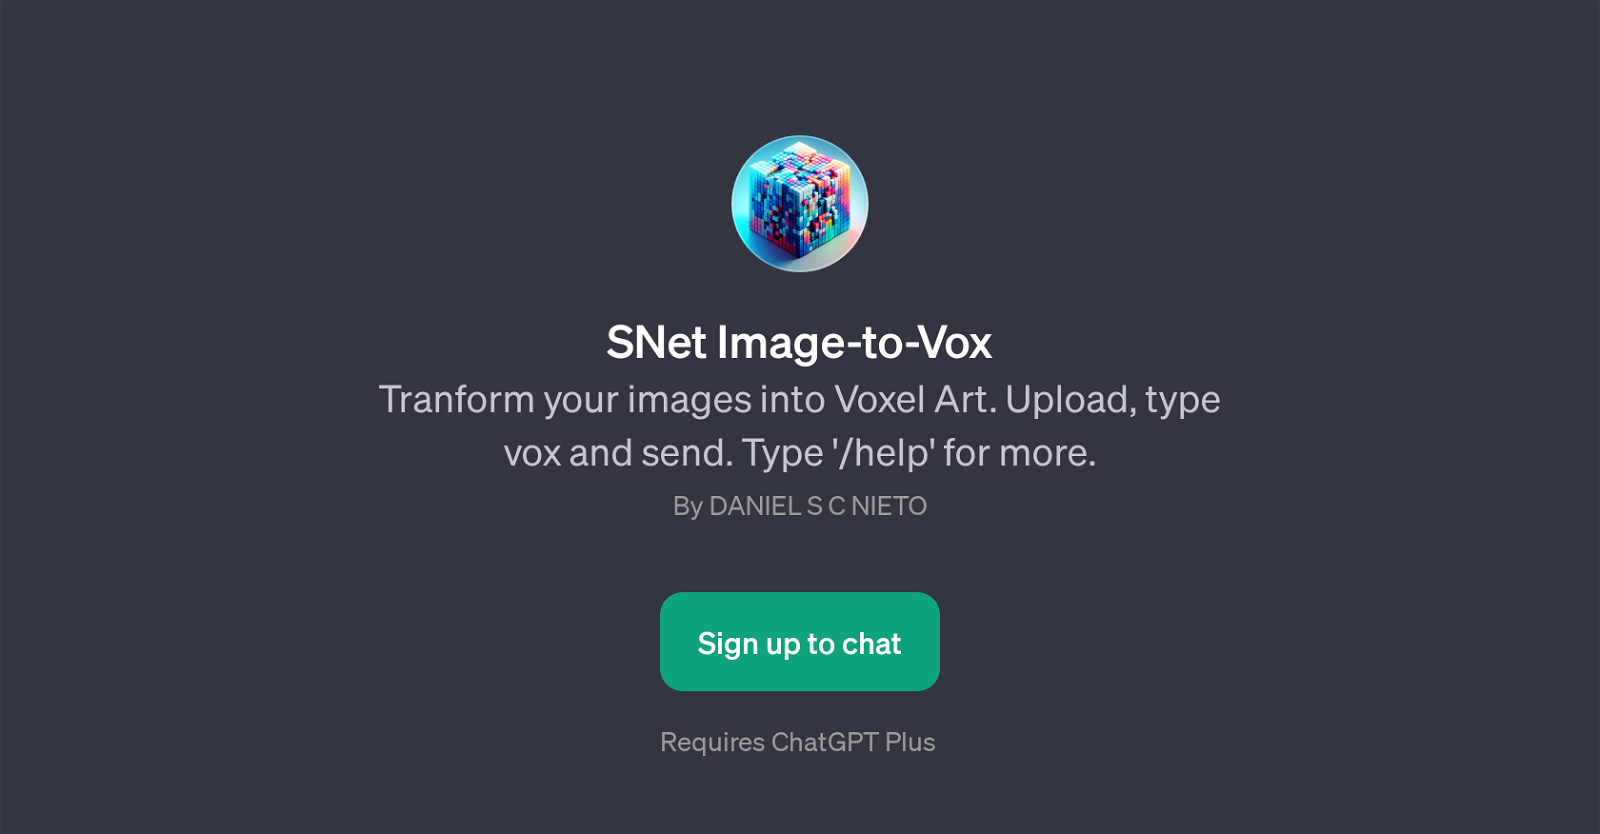 SNet Image-to-Vox website